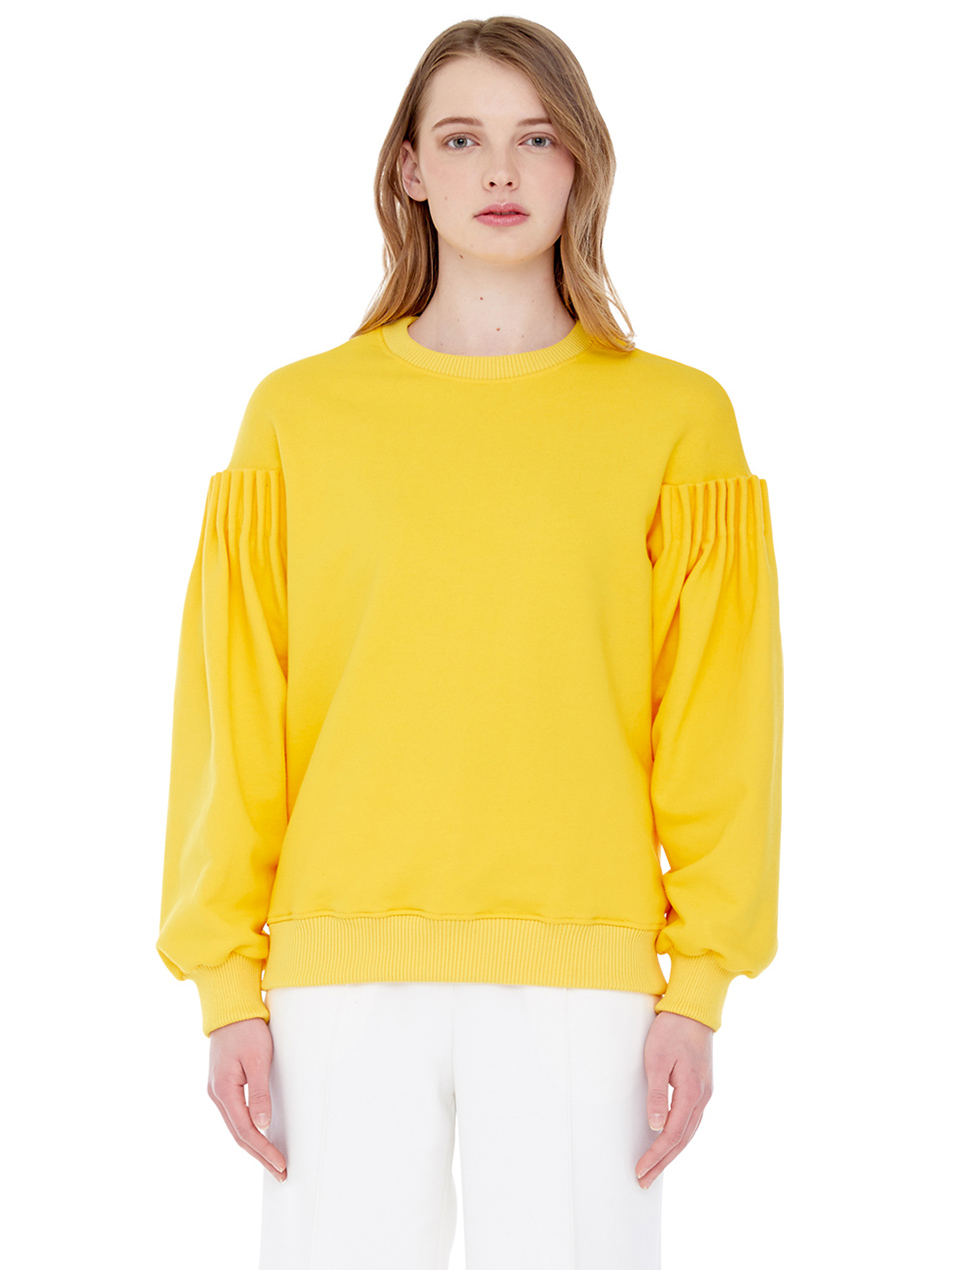 bud sleeve sweatshirt - yellow